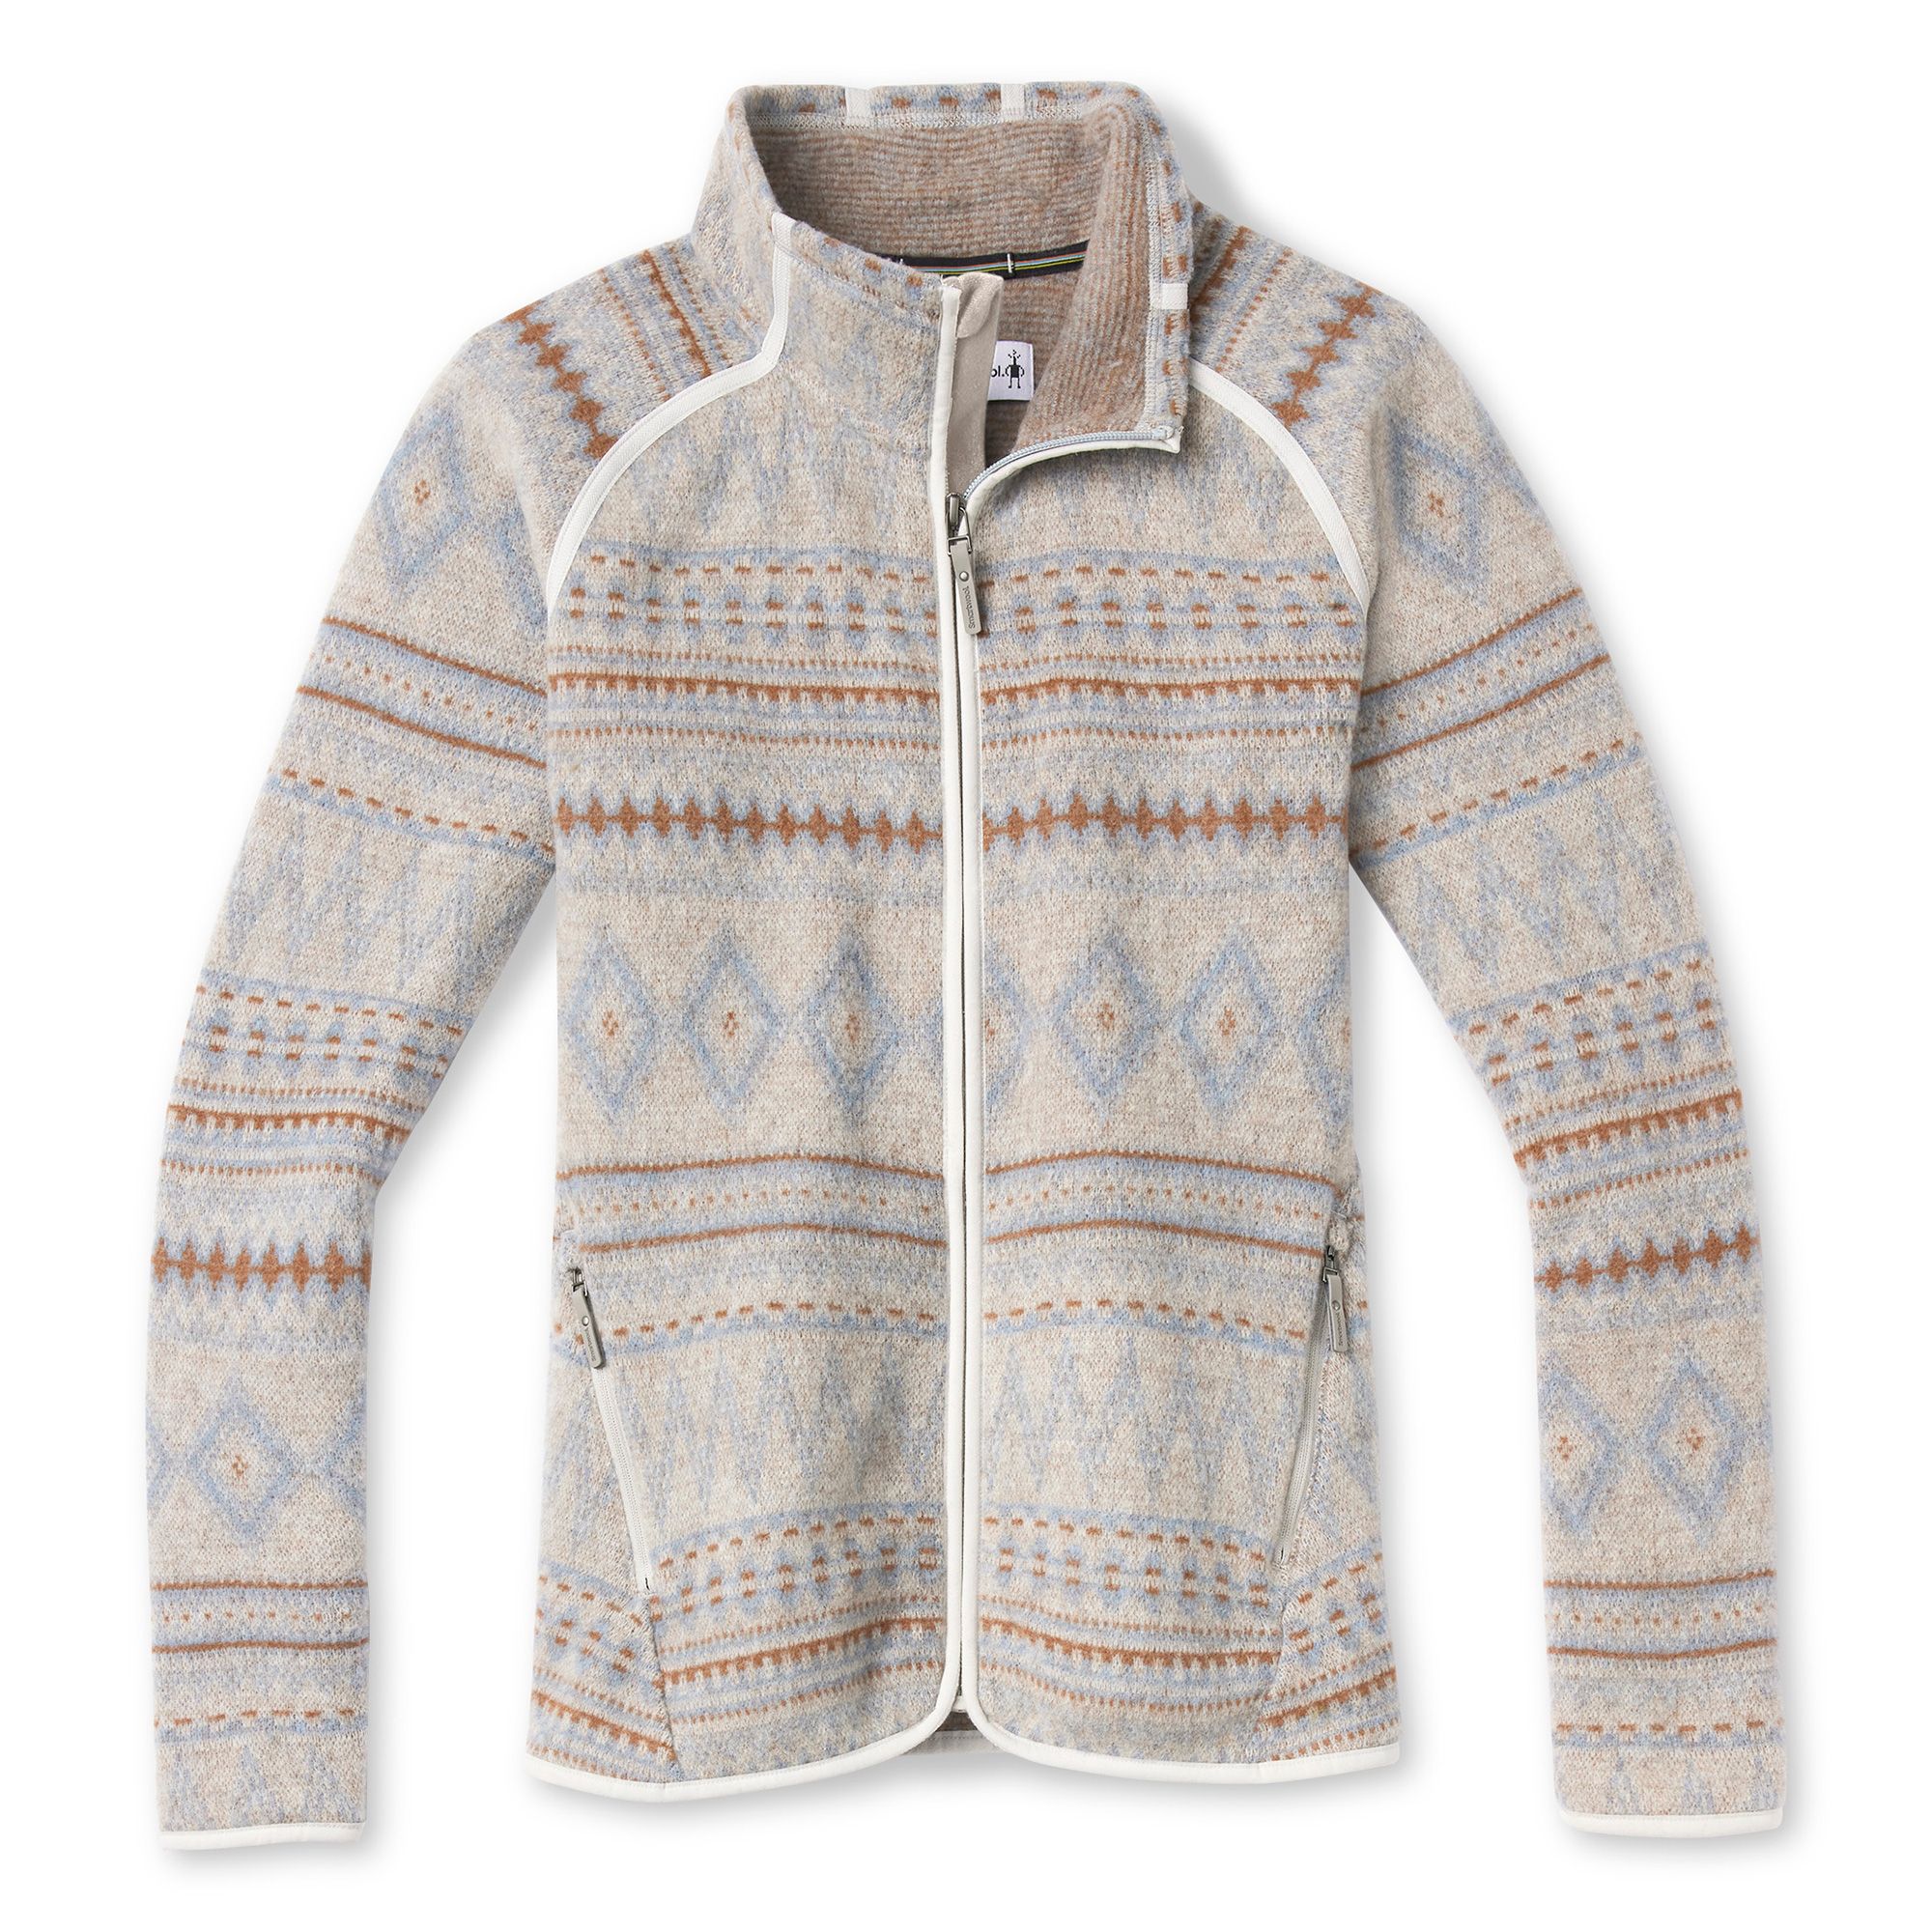 Smartwool, Hudson Trail Fleece Full-Zip Sweater